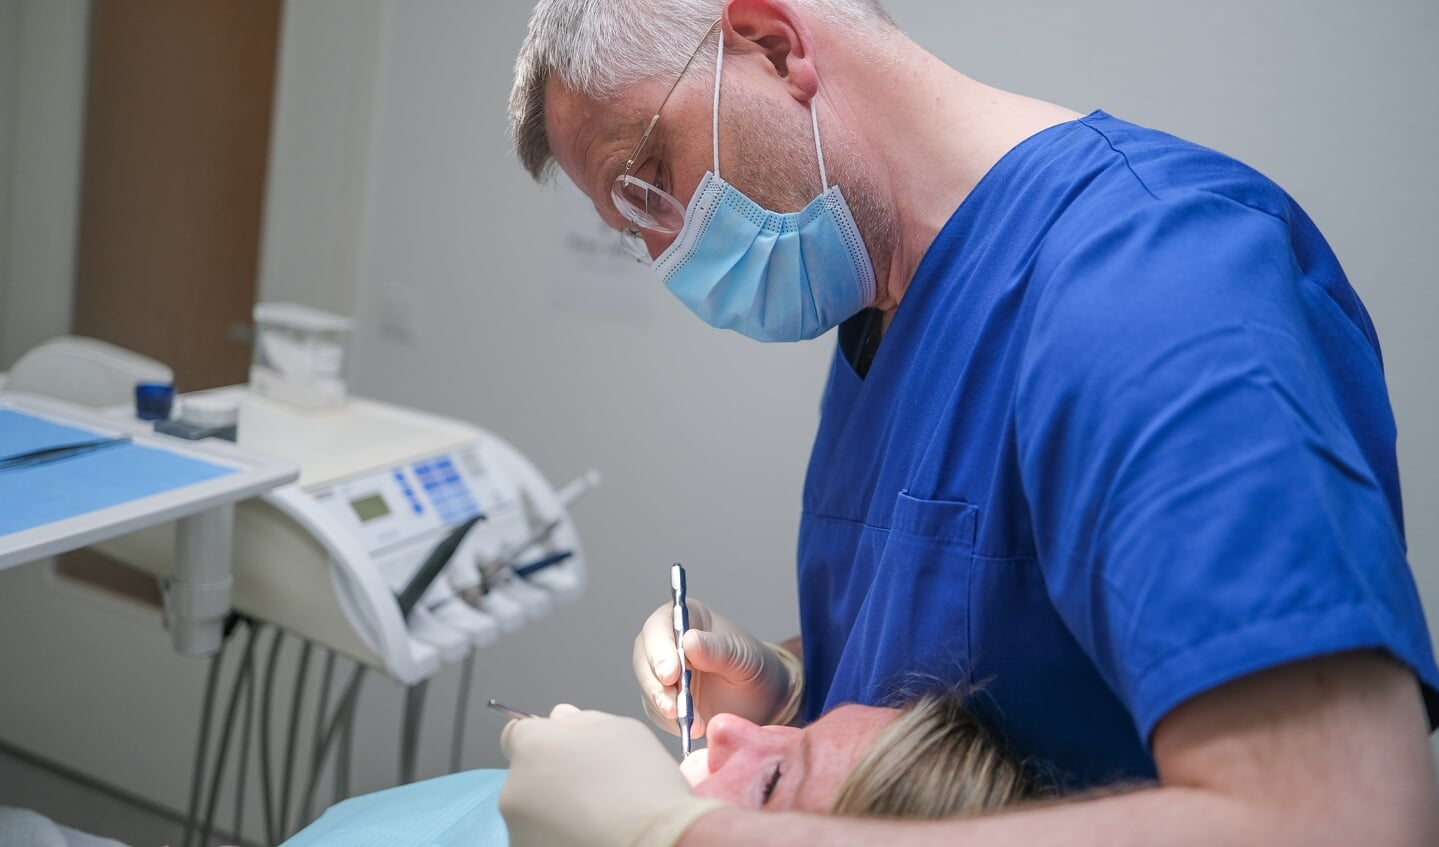 Det er måske, fordi sygeforsikrede patienter i Tyskland kan få gratis tandlægeeftersyn, at »tyskerne generelt har bedre tænder end danskerne«, mener Thomas Ove Jensen, der imidlertid ikke kan se den store forskel på folks tænder i forhold til for 25 år siden.